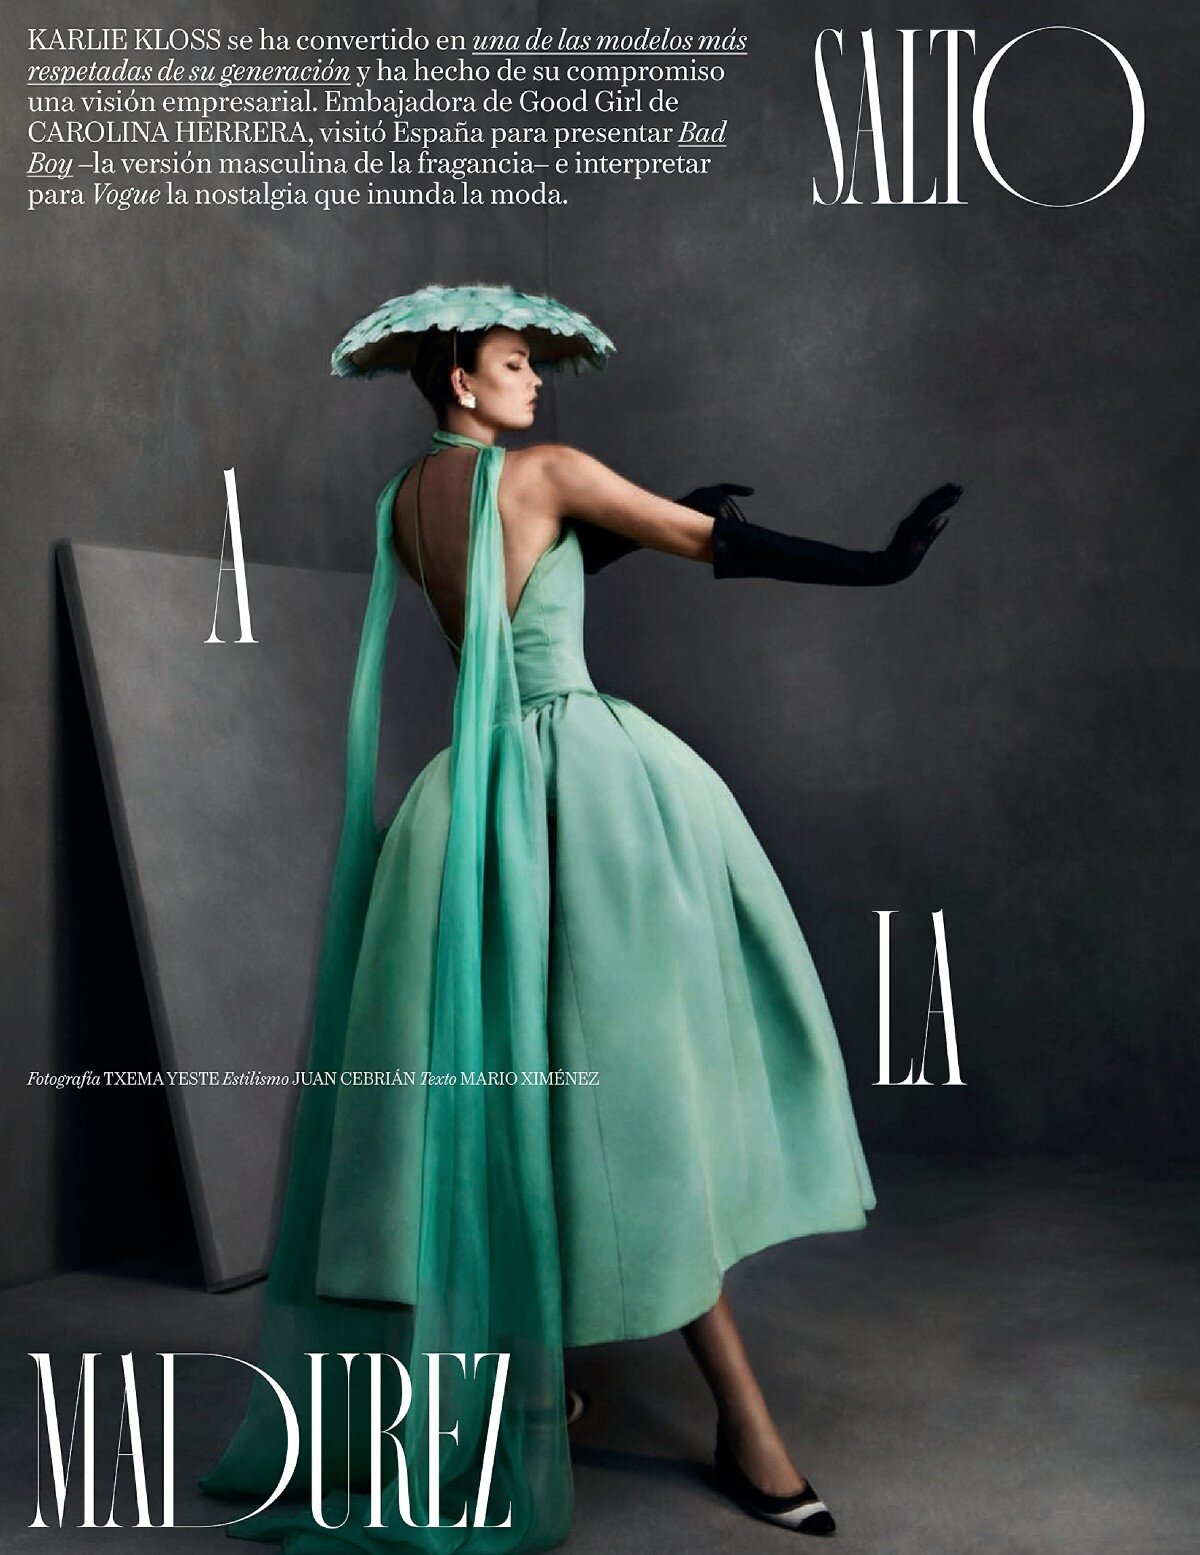 Karlie kloss by Txema Yeste for Vogue Spain December 2019 (11).jpg